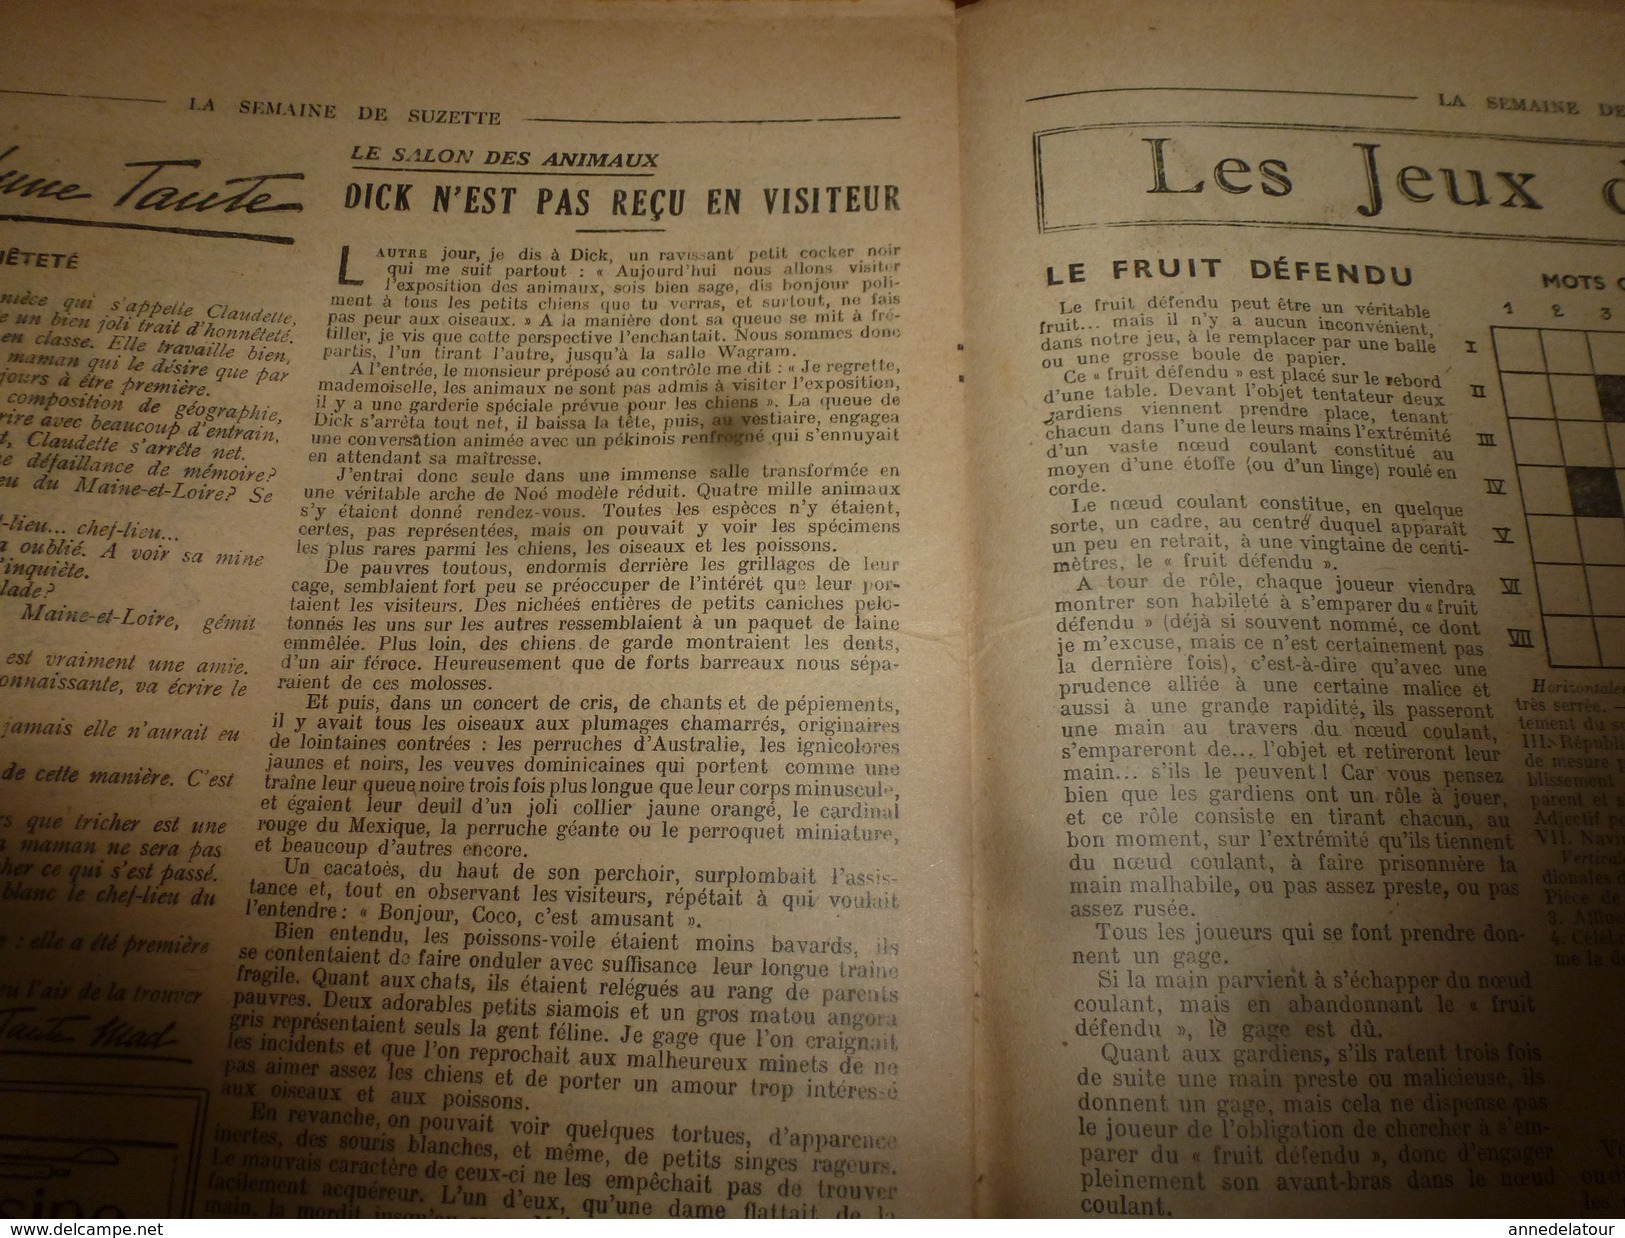 1947 LSDS (La Semaine De Suzette) :La Drogue De Vérité Du Dr Kluver De Chicago; La Fortune De RIVANONE ; Etc - La Semaine De Suzette